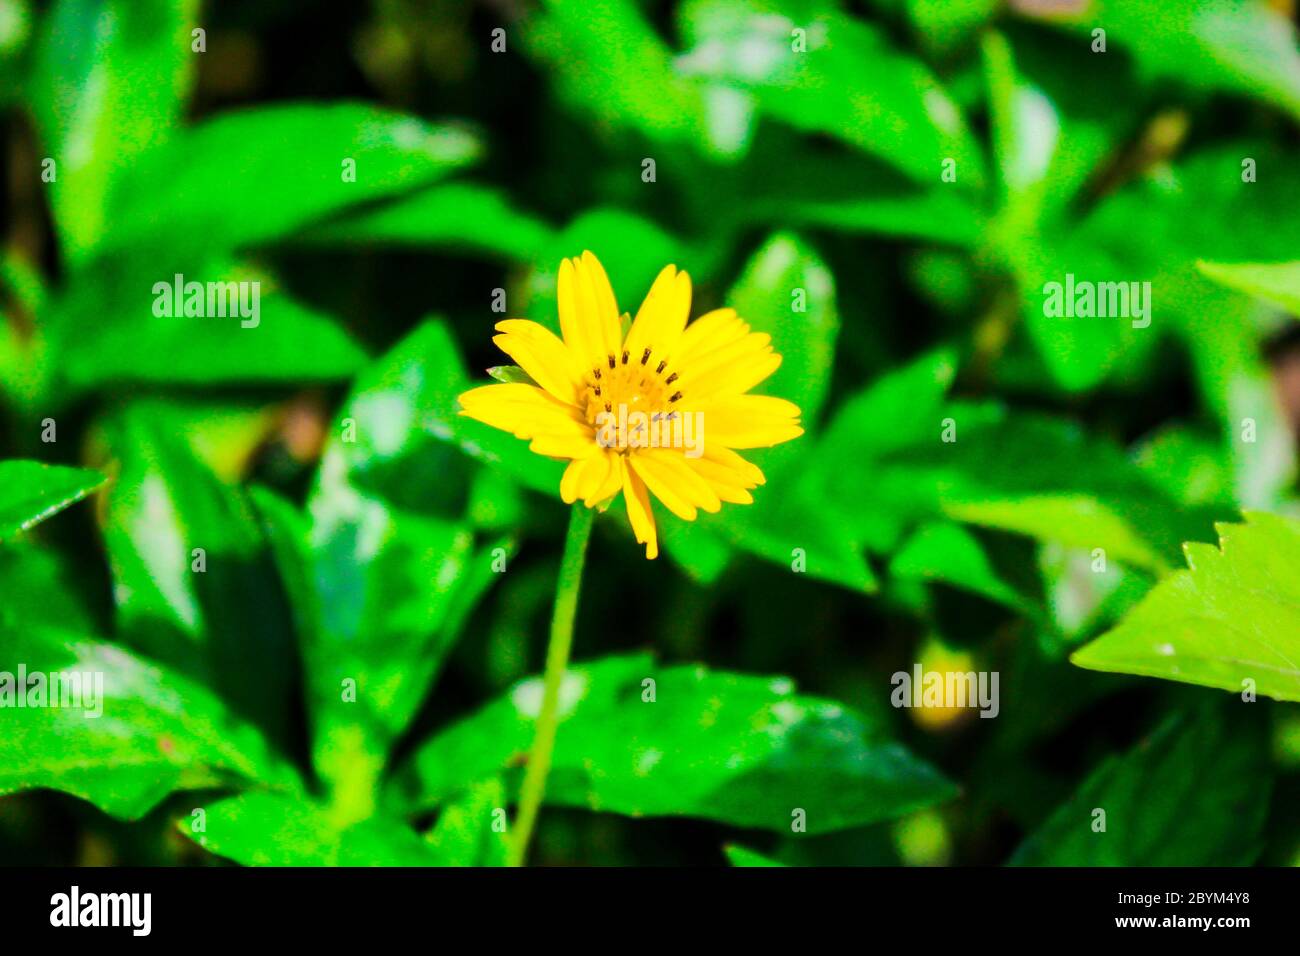 acmella oleracea. spilanthes acmella, Zahnschmerzpflanze, Parakresse, frische gelbe Blume Wegrand und grünes Blatt Stockfoto